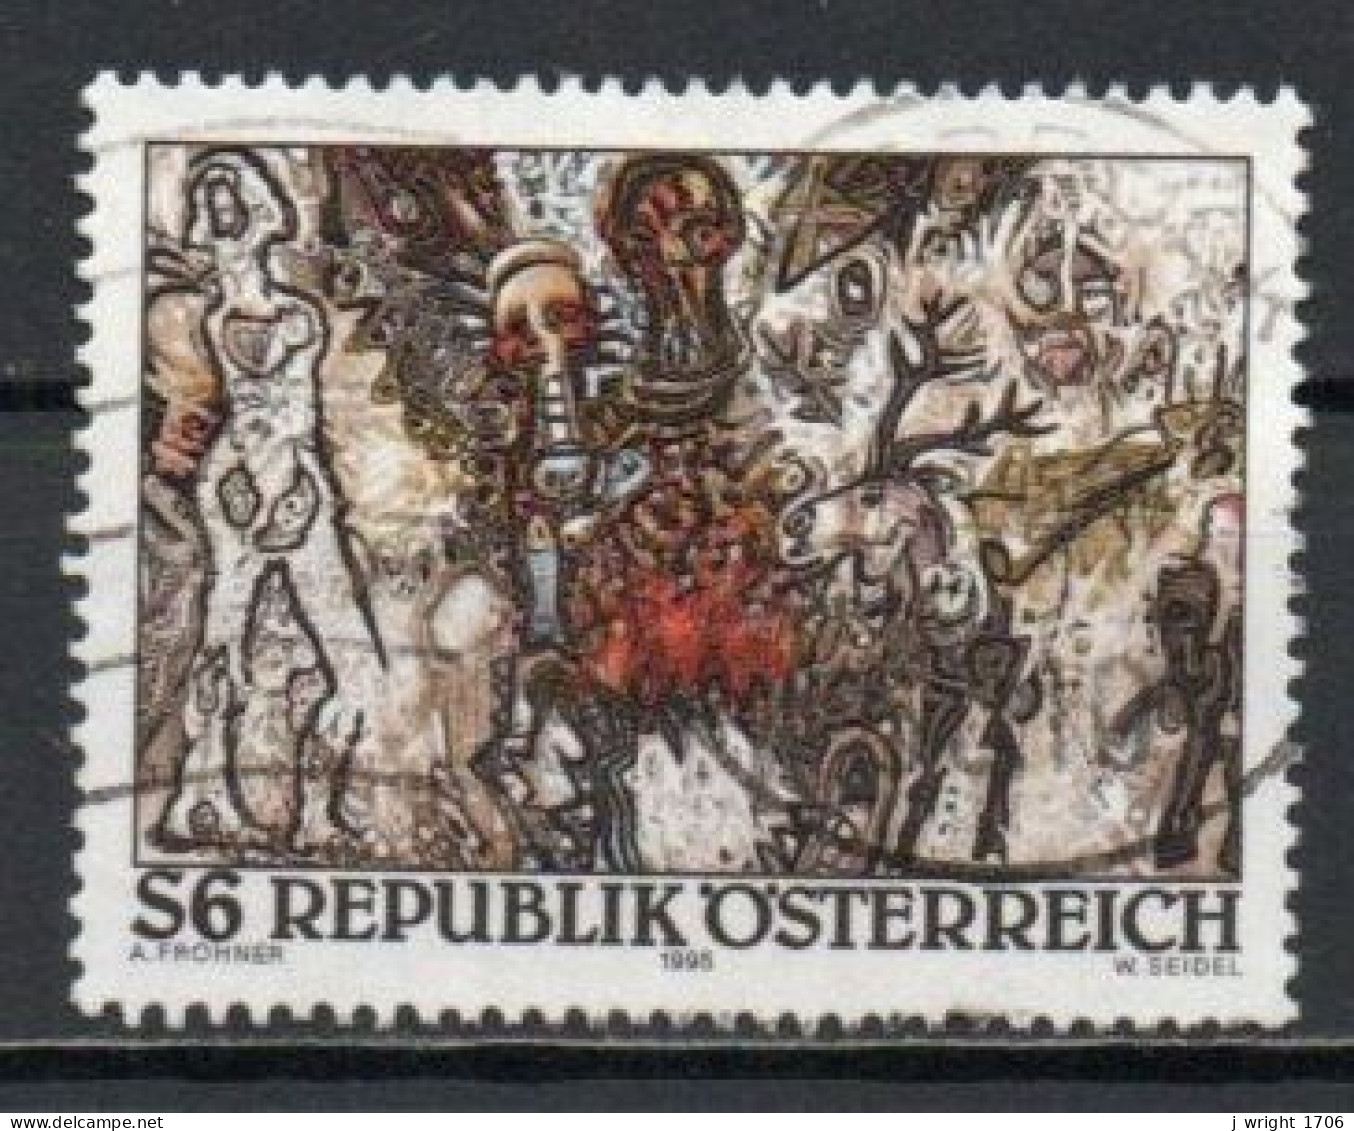 Austria, 1995, Modern Art/Europaisches Landschaftsbild, 6s, USED - Used Stamps